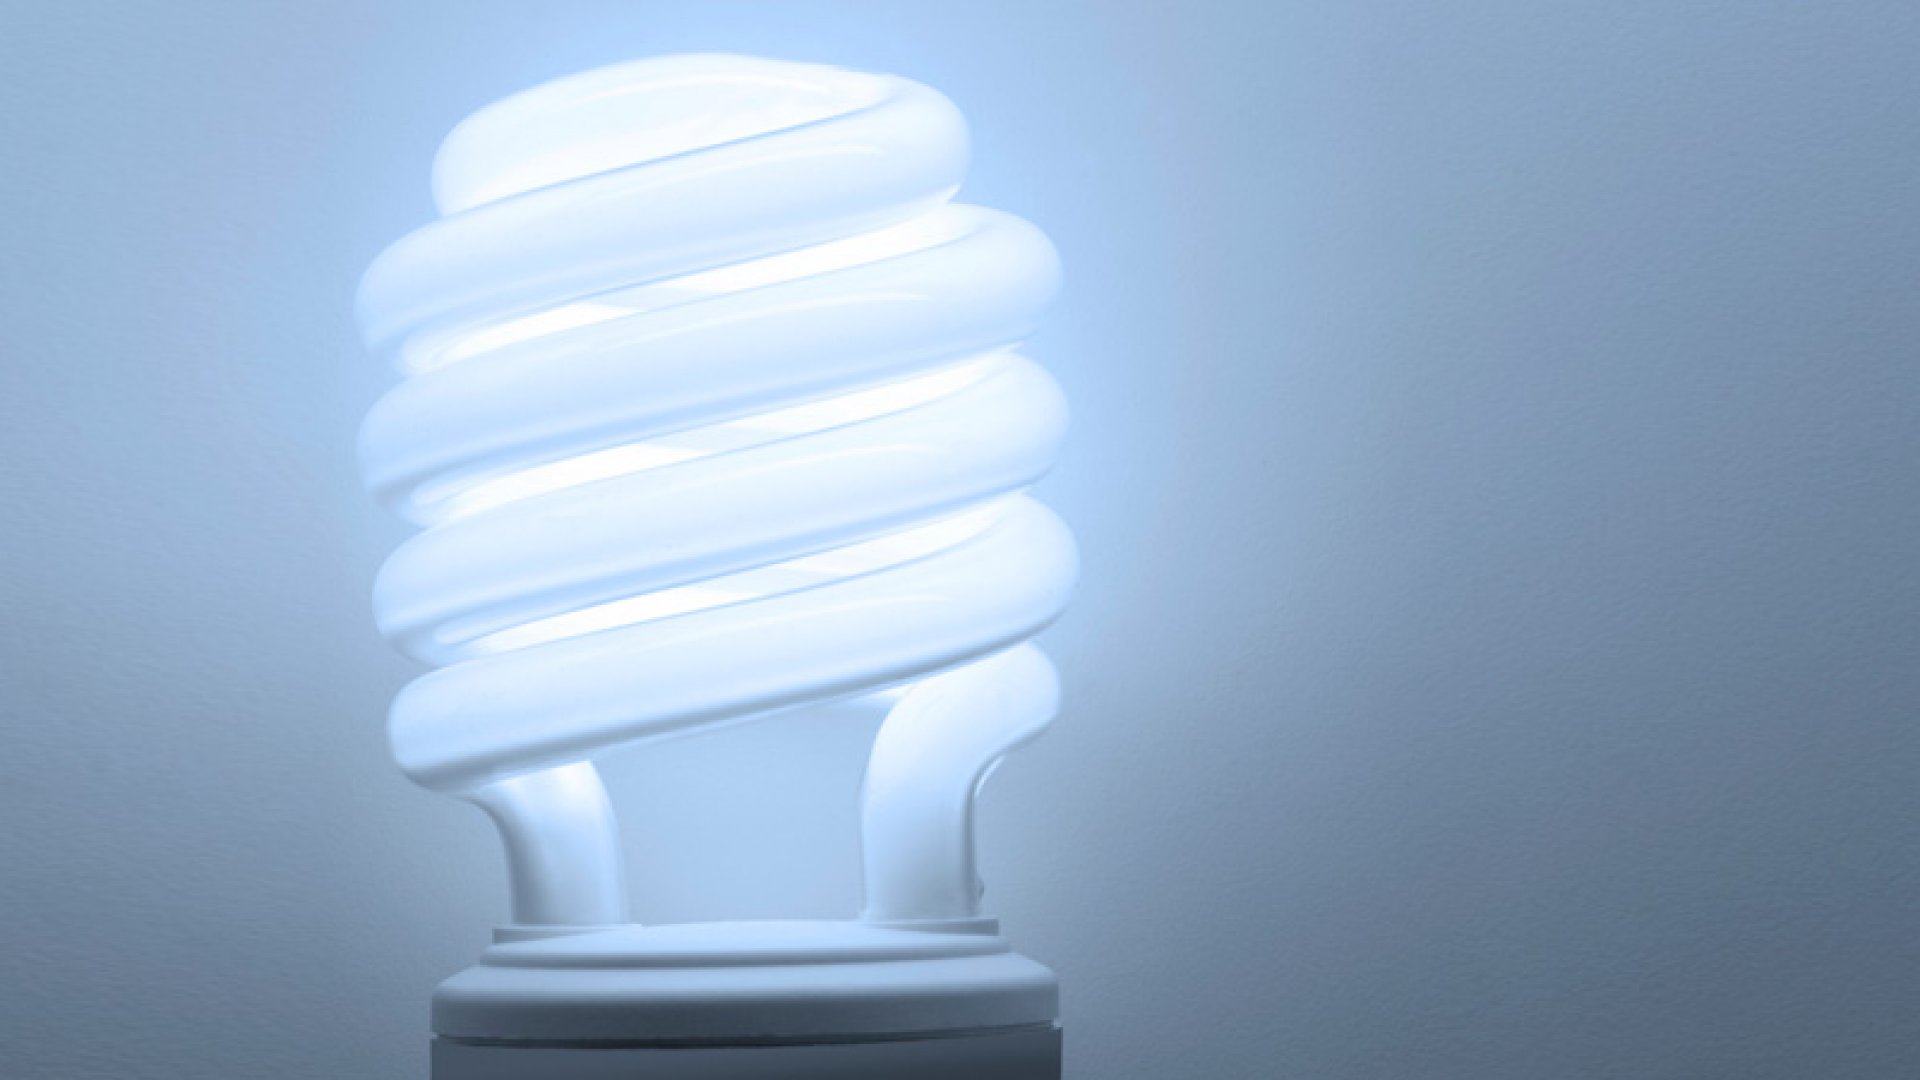 What Is An E27 Light Bulb